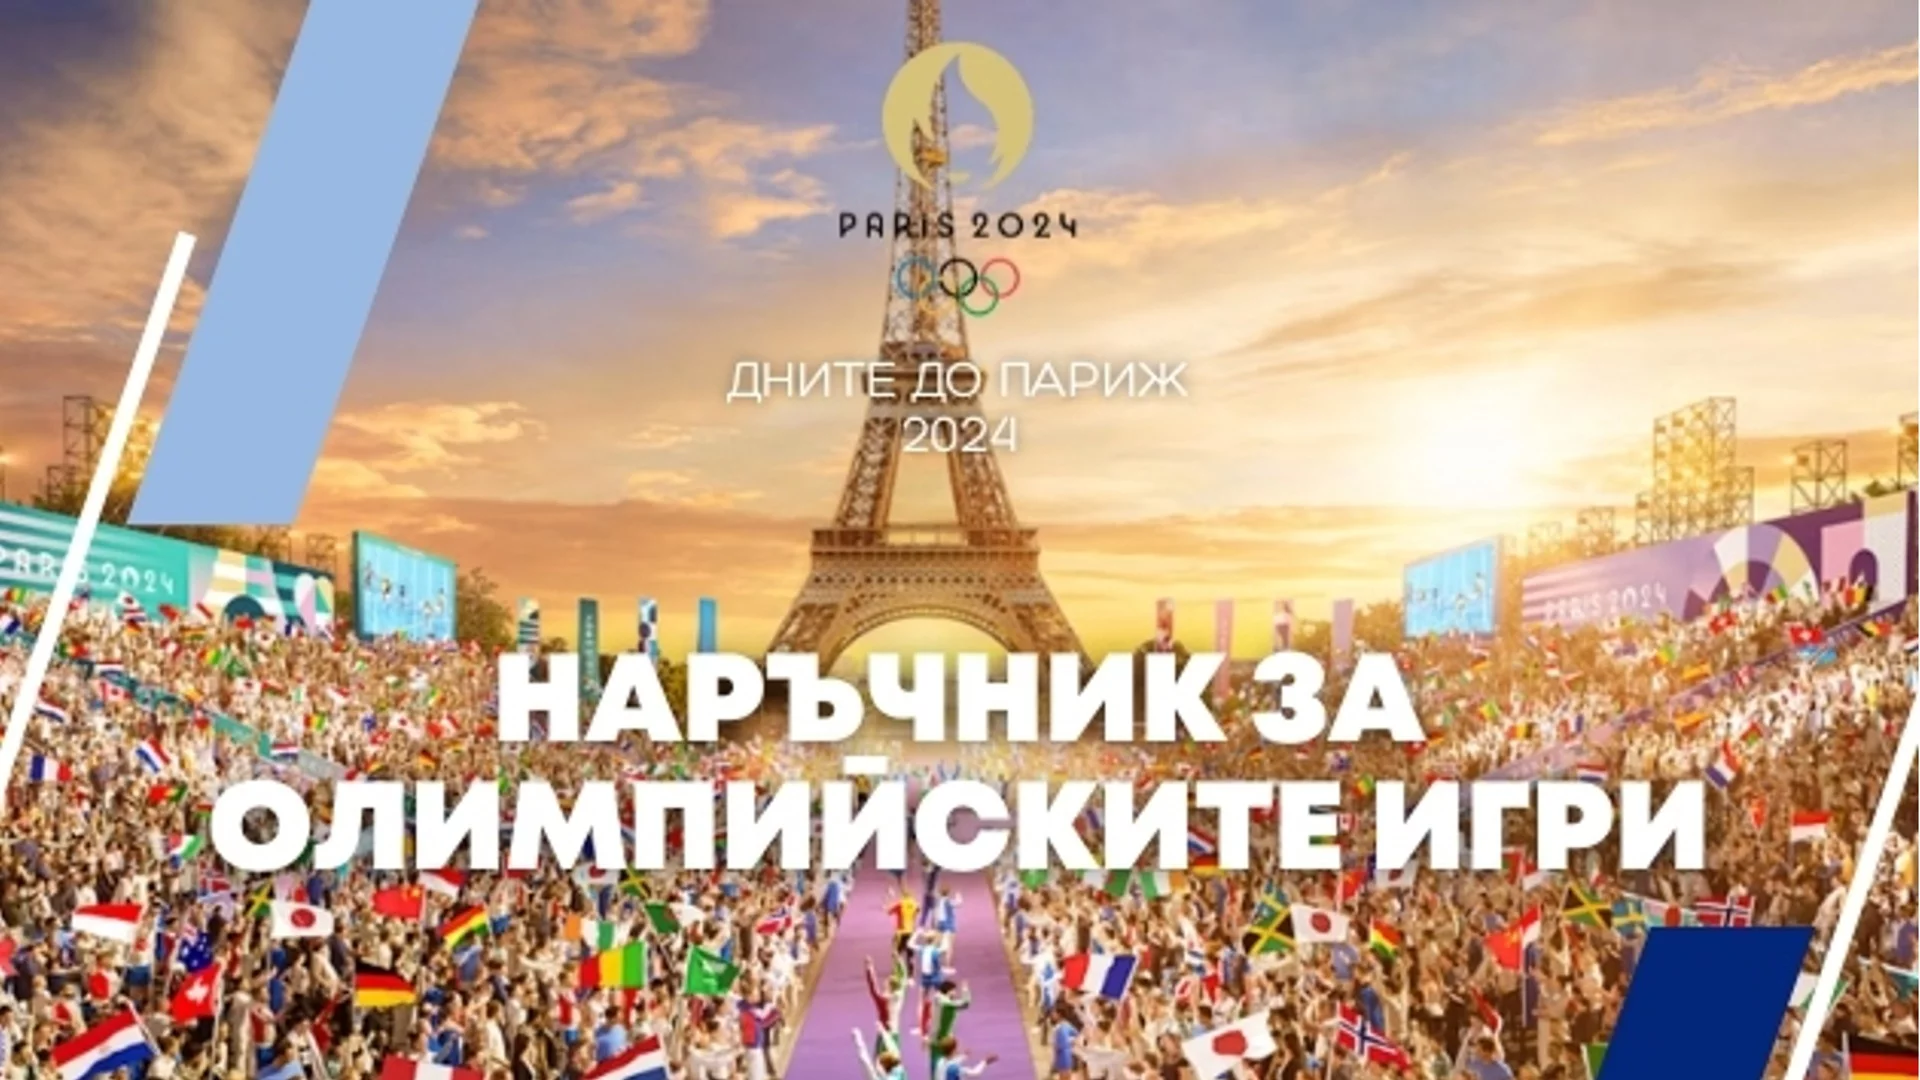 21 дни до Париж 2024: Наръчник за Олимпийските игри - всичко, което трябва да знаете